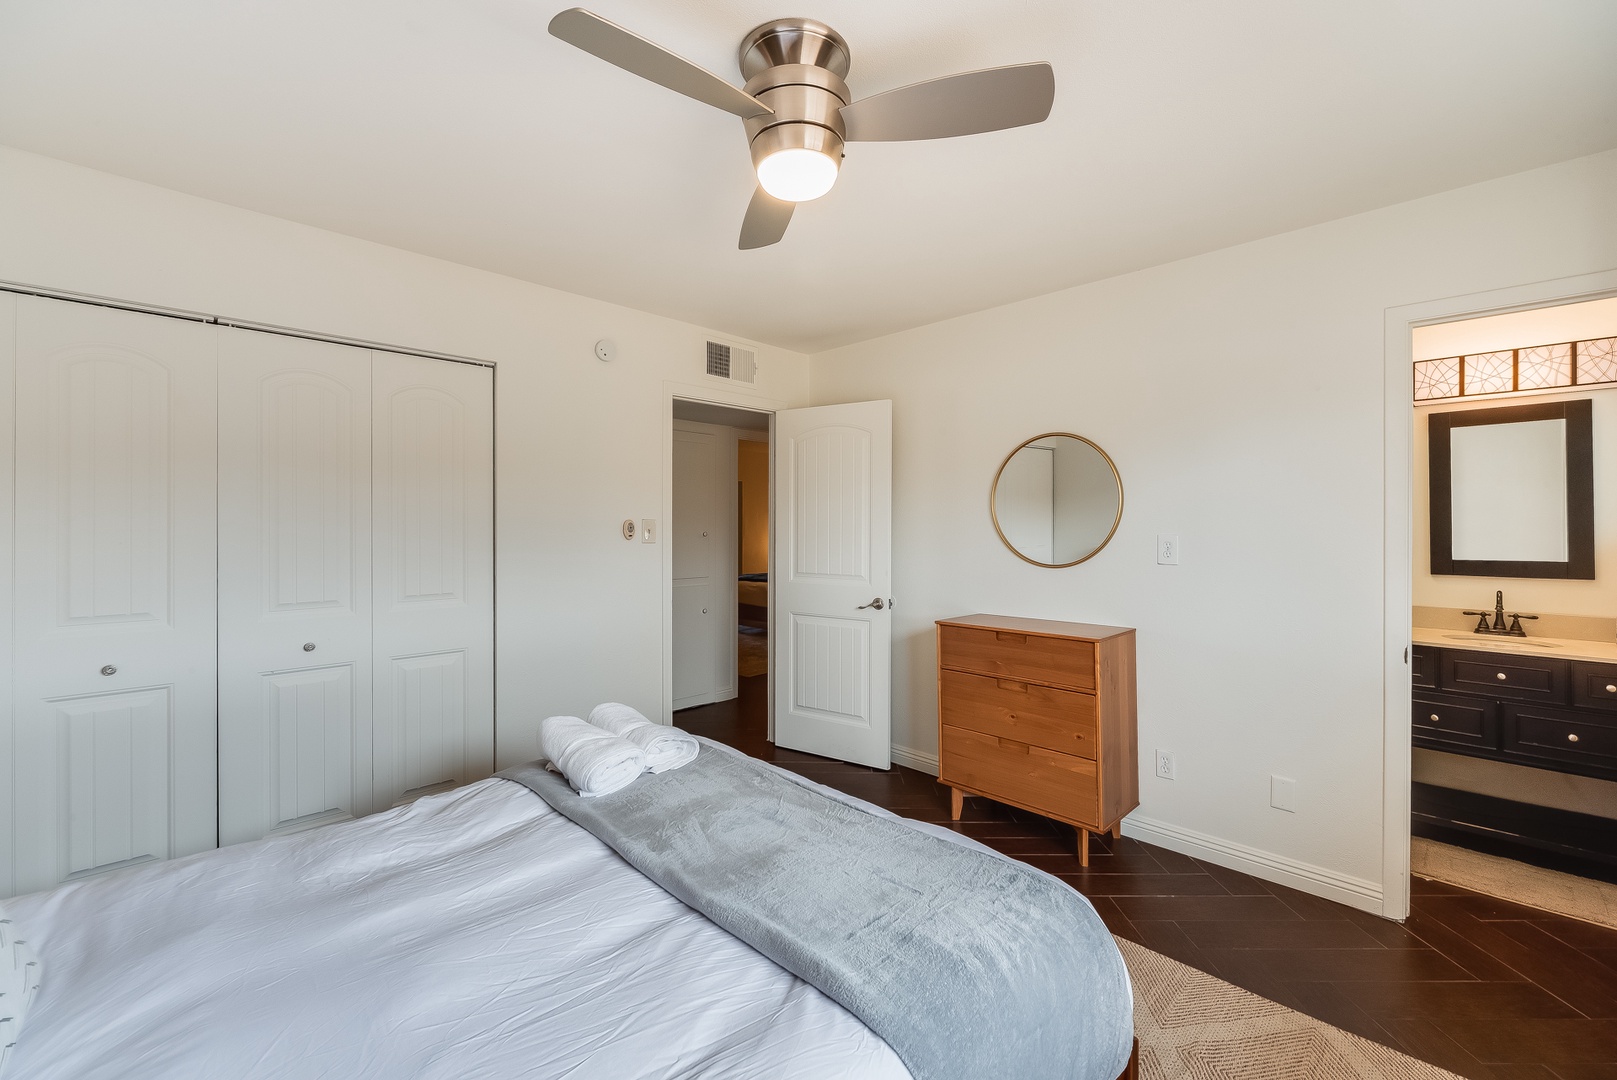 Phoenix Vacation Rentals, Desert Oasis - Guest bedroom 2 has en-suite bath